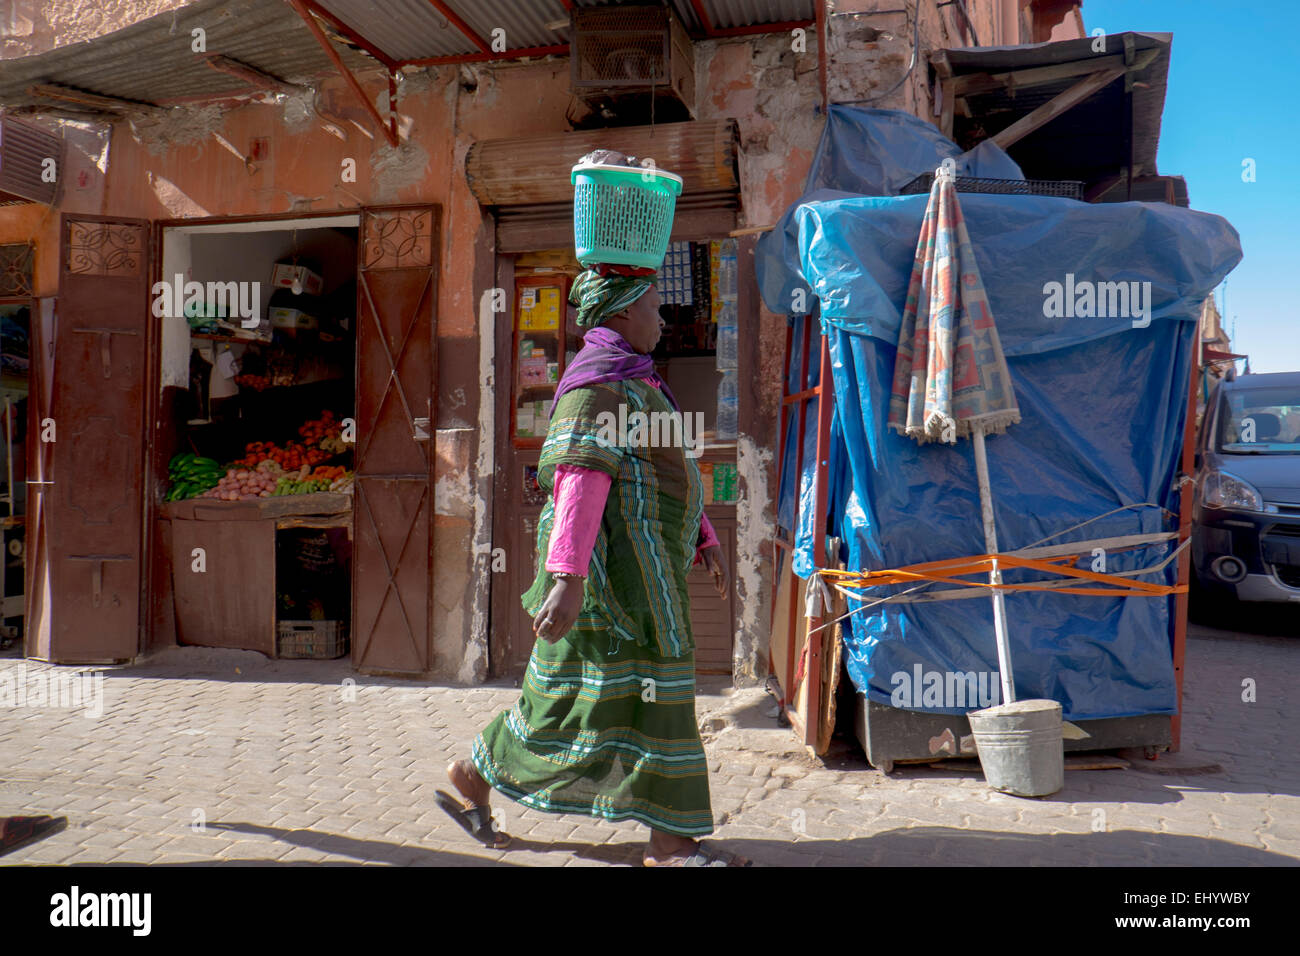 Mujer en traje tradicional de África llevando el canasto sobre su cabeza, la Medina, la ciudad vieja, Marrakech, Marrakech, Marruecos, Norte de África Foto de stock